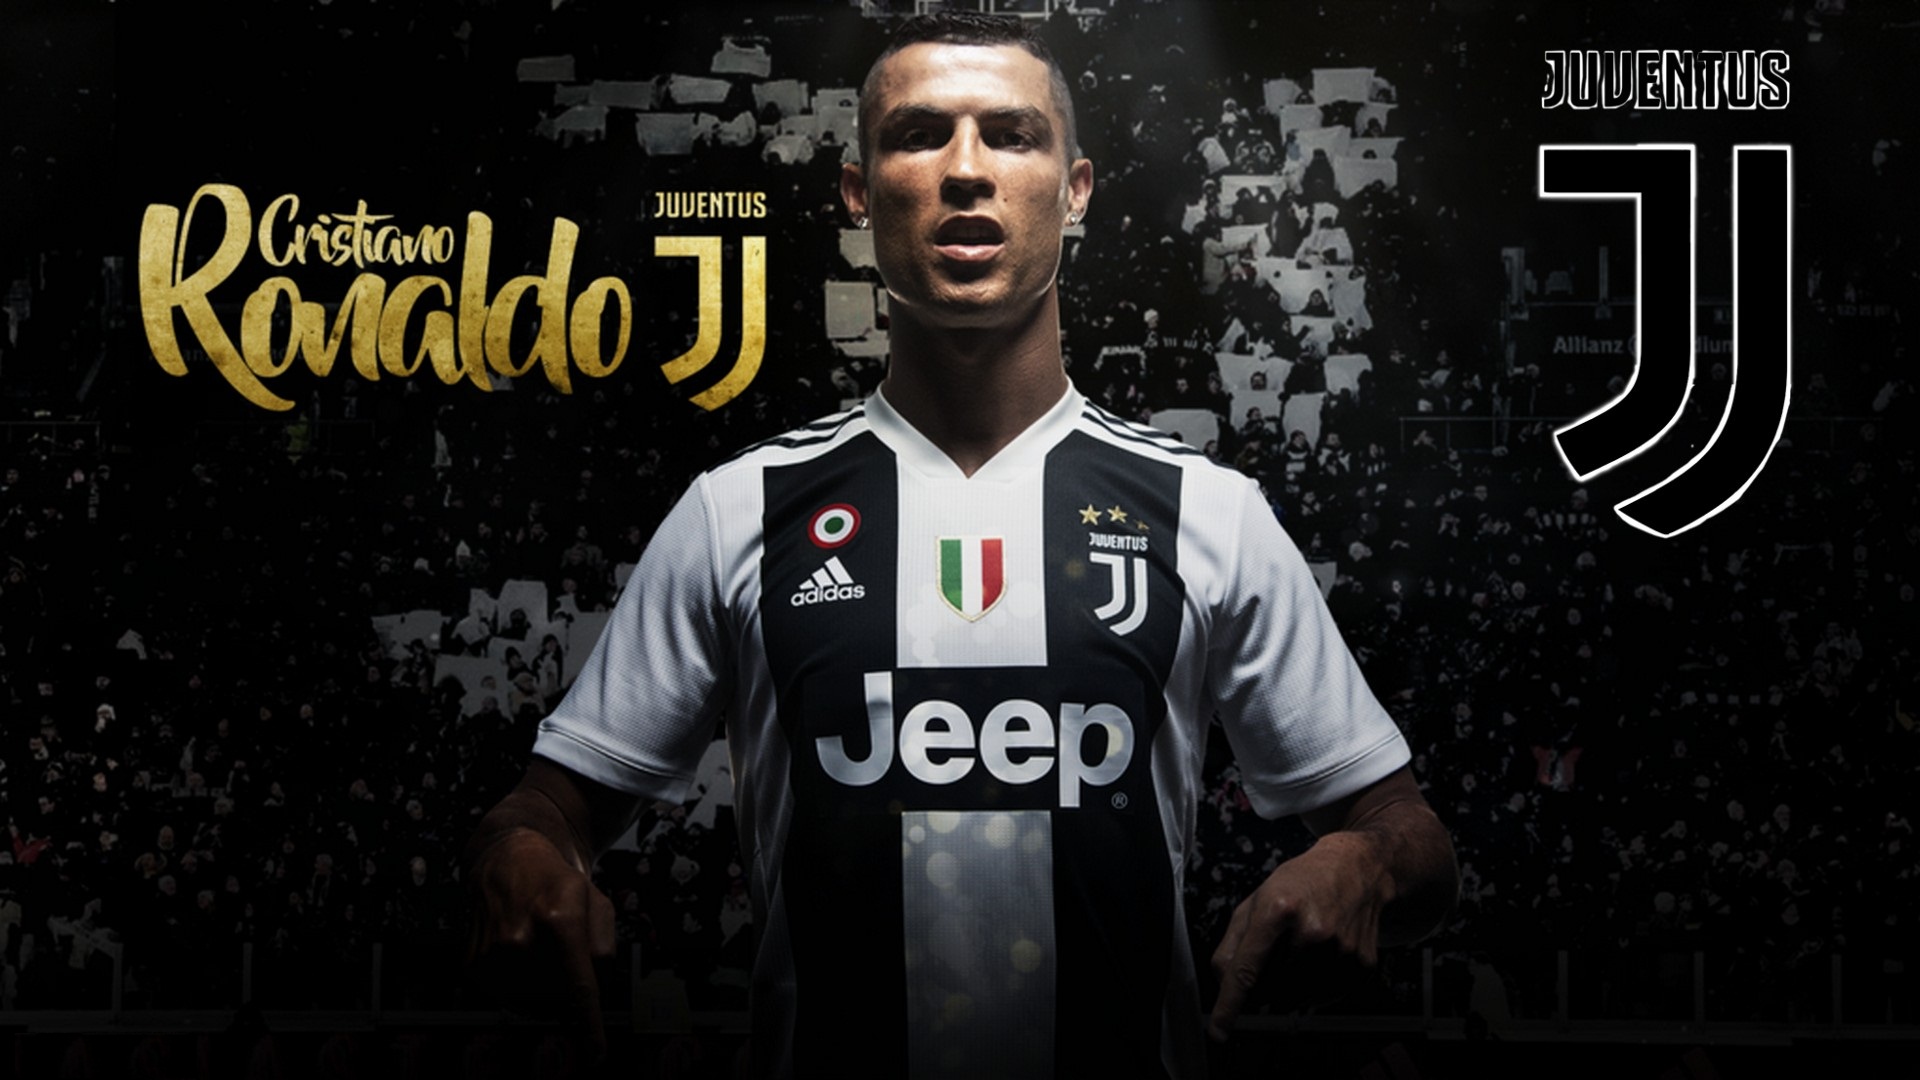 Ronaldo Juventus HD Wallpapers 